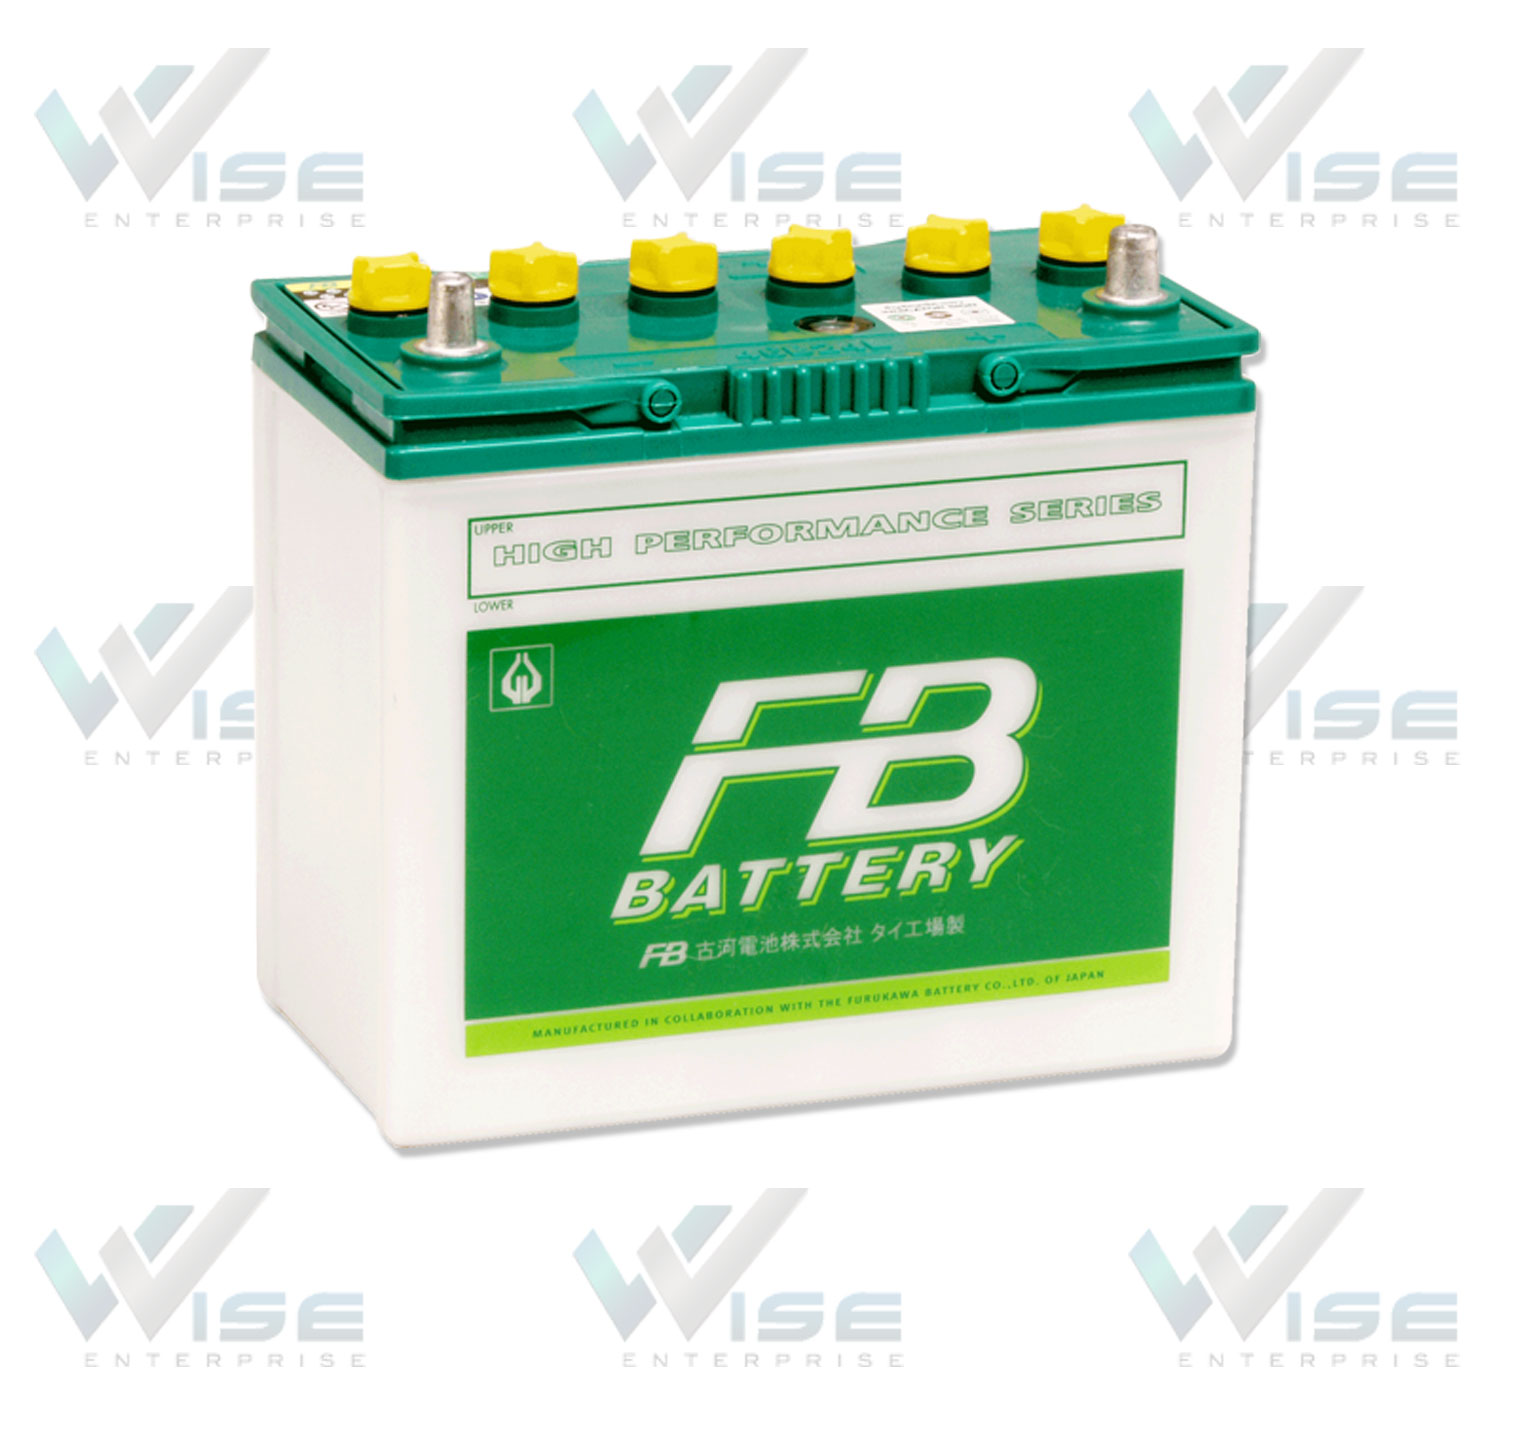 แบตเตอรี่รถยนต์ Automotive Batteries แบตเตอรี่รุ่นมาตรฐาน Conventional Series แบตเตอรี่เอฟบี FB Battery